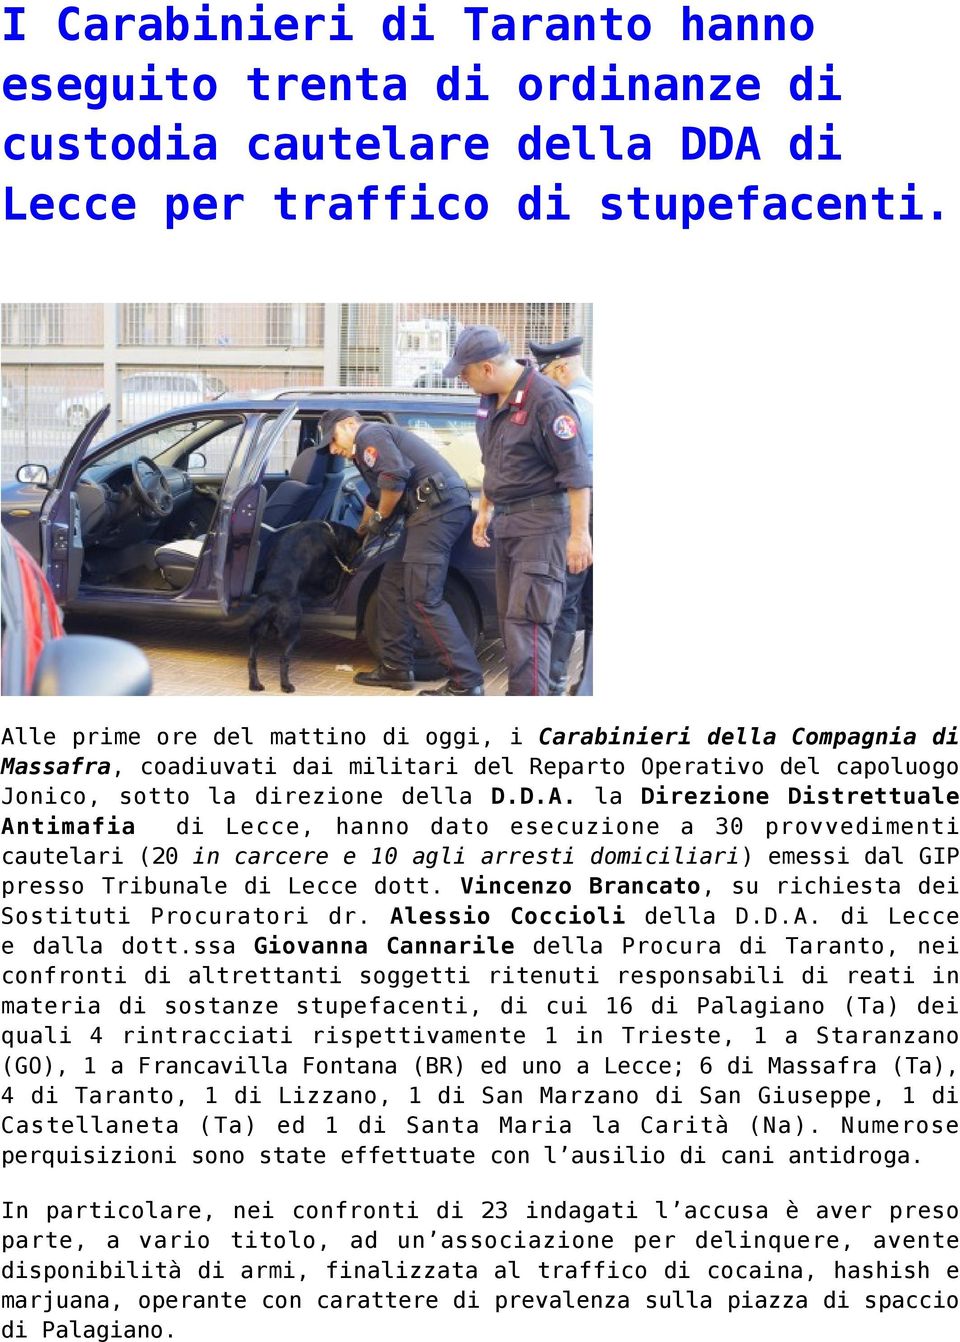 Vincenzo Brancato, su richiesta dei Sostituti Procuratori dr. Alessio Coccioli della D.D.A. di Lecce e dalla dott.